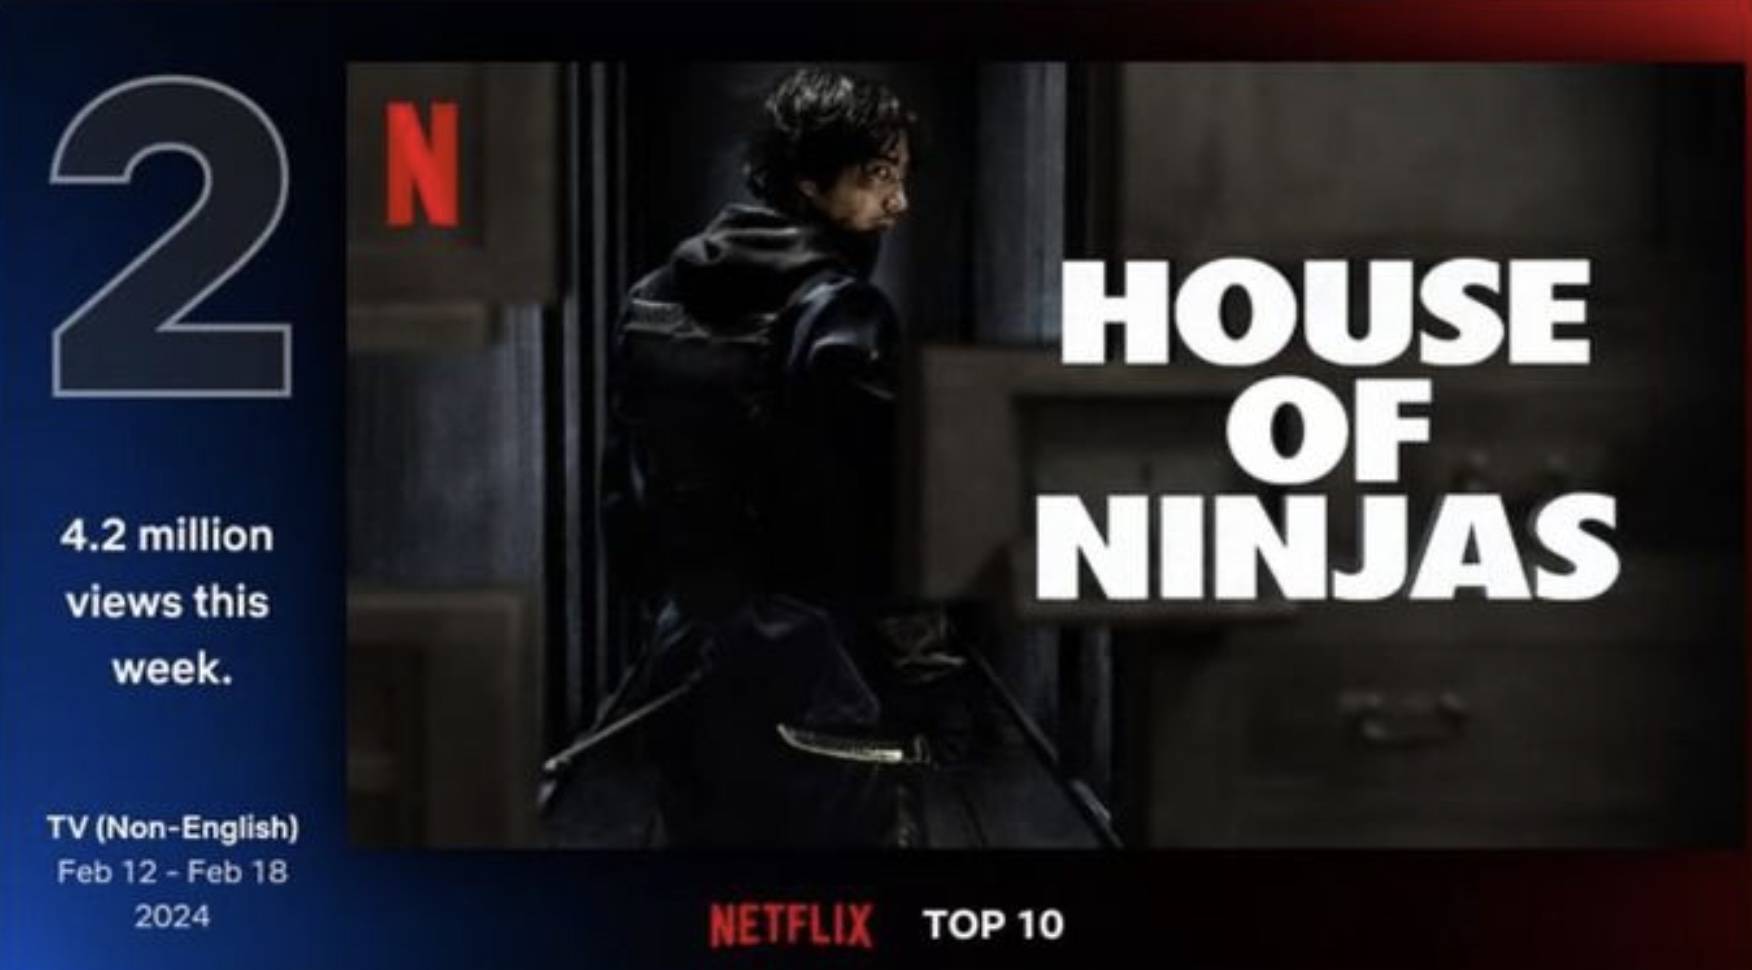 忍者之家 虽然还没有正式宣布第二季的消息，但《忍者之家》在海外评论网站IMDb上获得了7.4分的不错评价，截止21日依然稳居Top 10以内